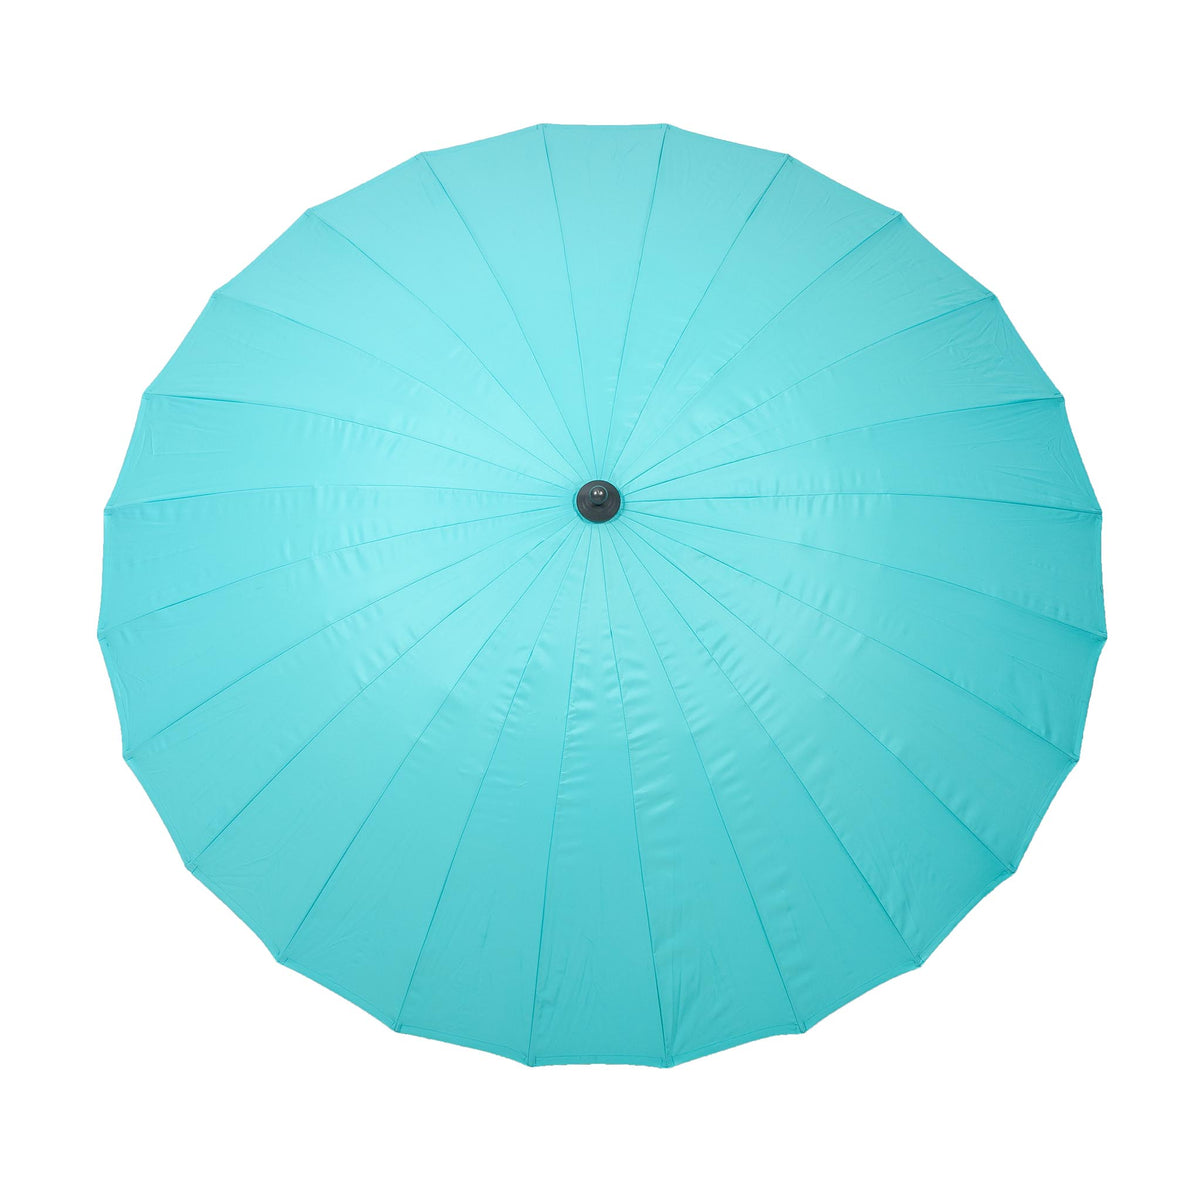 2.7m Aqua Blue Shanghai Crank & Tilt Outdoor Parasol Canopy